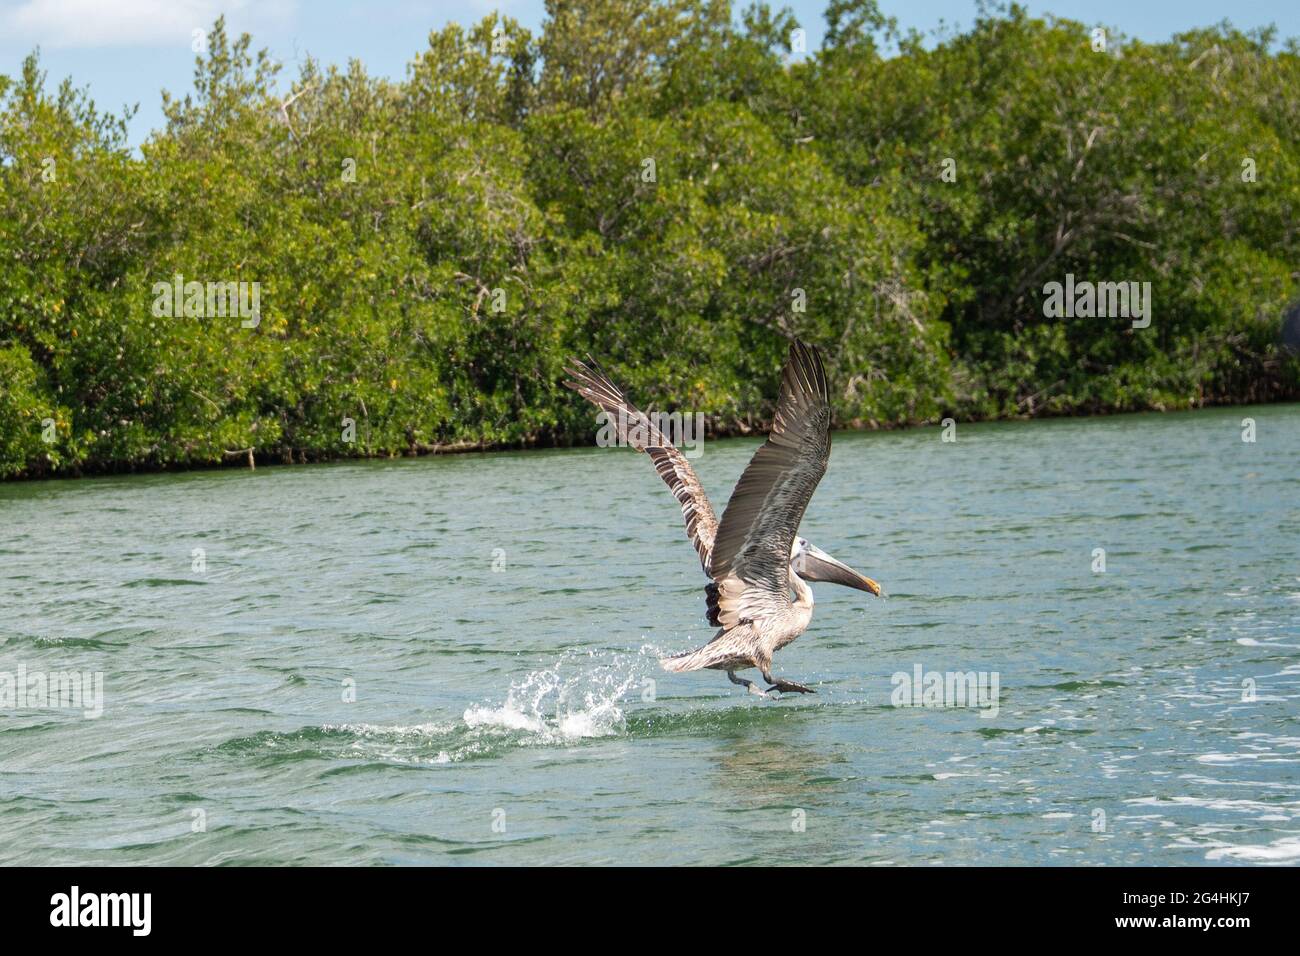 Pesca de aves pelícanos en el río Zaza, Cuba Foto de stock